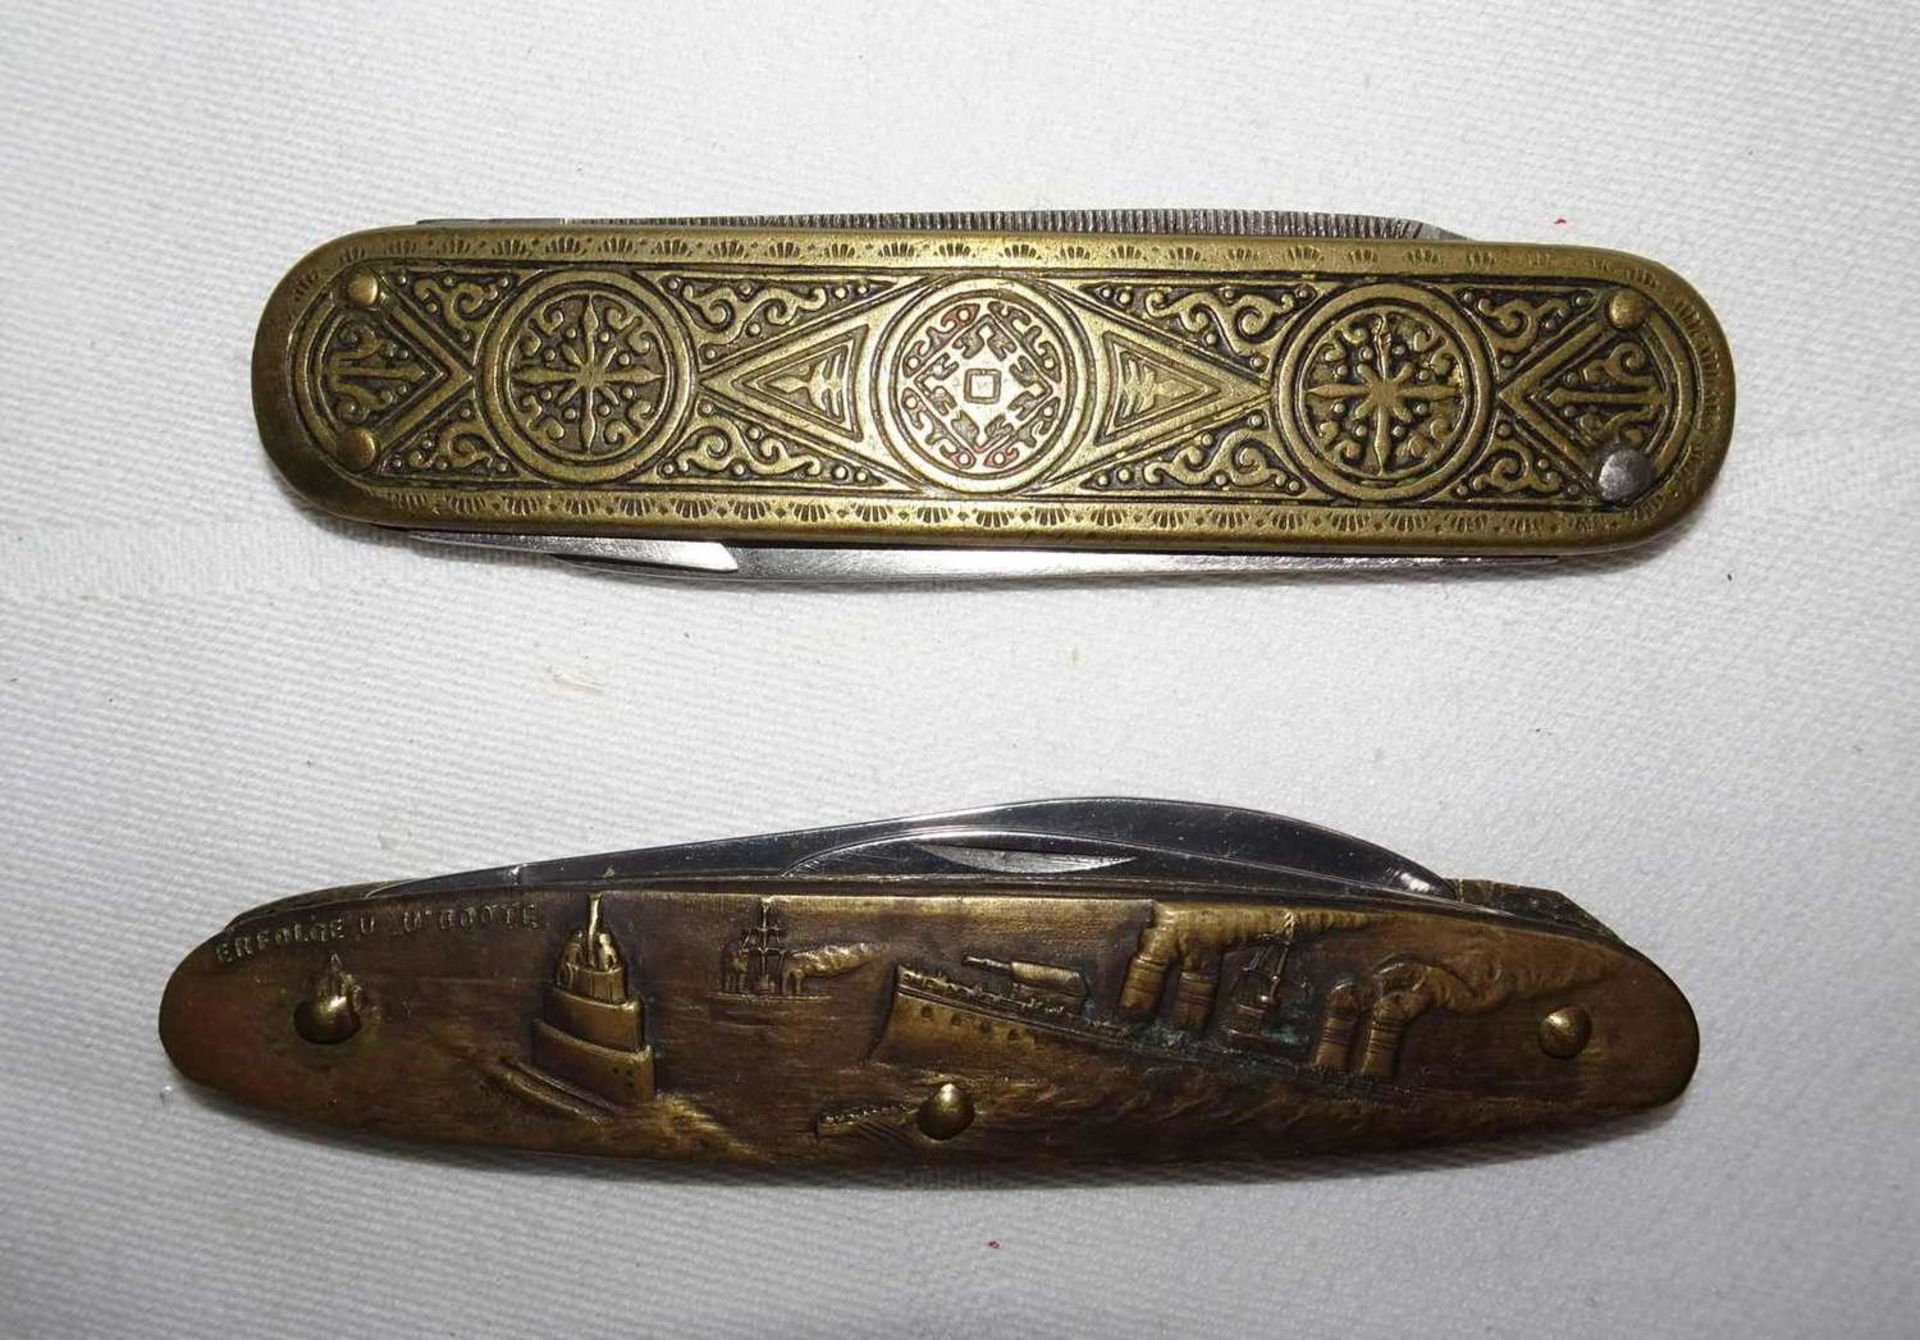 2 alte Taschenmesser, dabei 1 seltenes Messer Adolf Hitler U-Boote Erfolge. Bitte besichtigen! 2